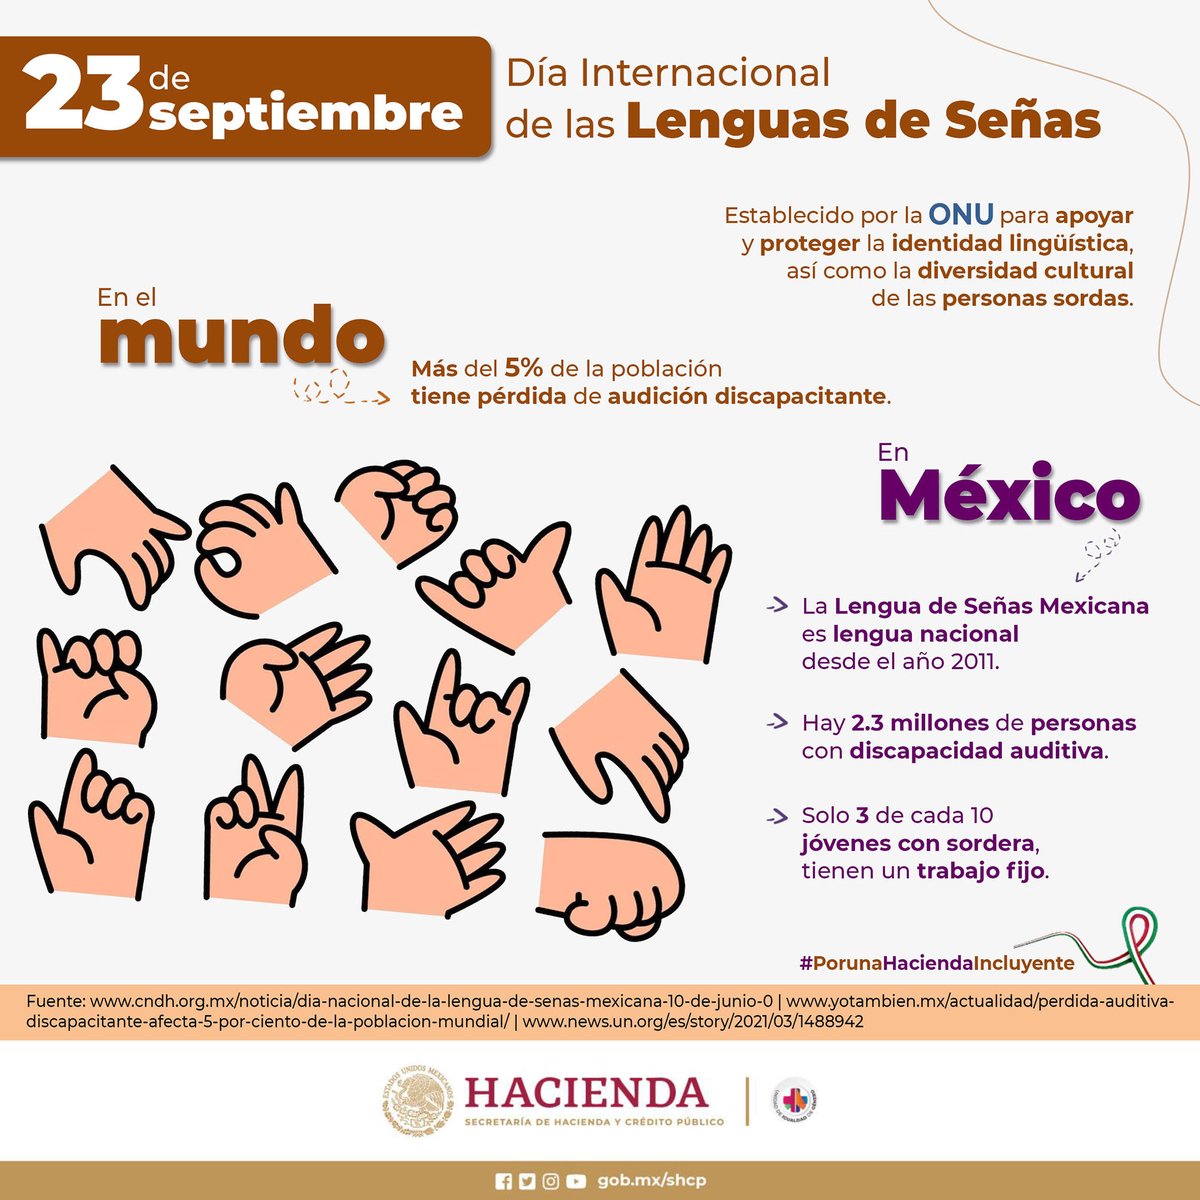 El 23 de septiembre se celebra el Día Internacional de las Lenguas de Señas para promover la importancia de la comunicación y plena realización de los derechos humanos de las personas sordas.

#EfemérideHacienda 🗓
#PorUnaHaciendaIncluyente